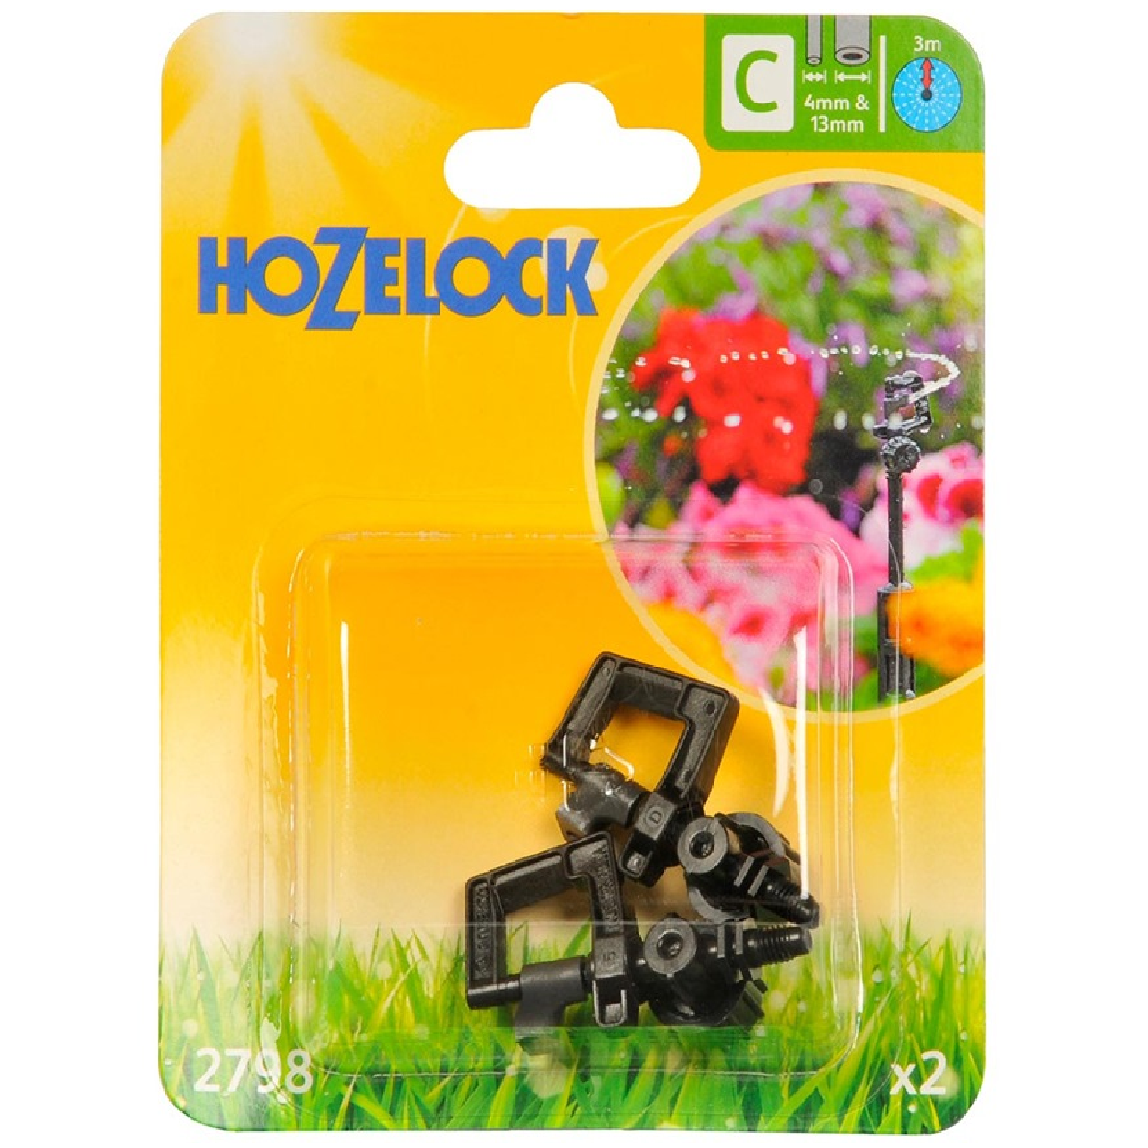 Hozelock MINI SPRINKLER 2798 2PC/Pack